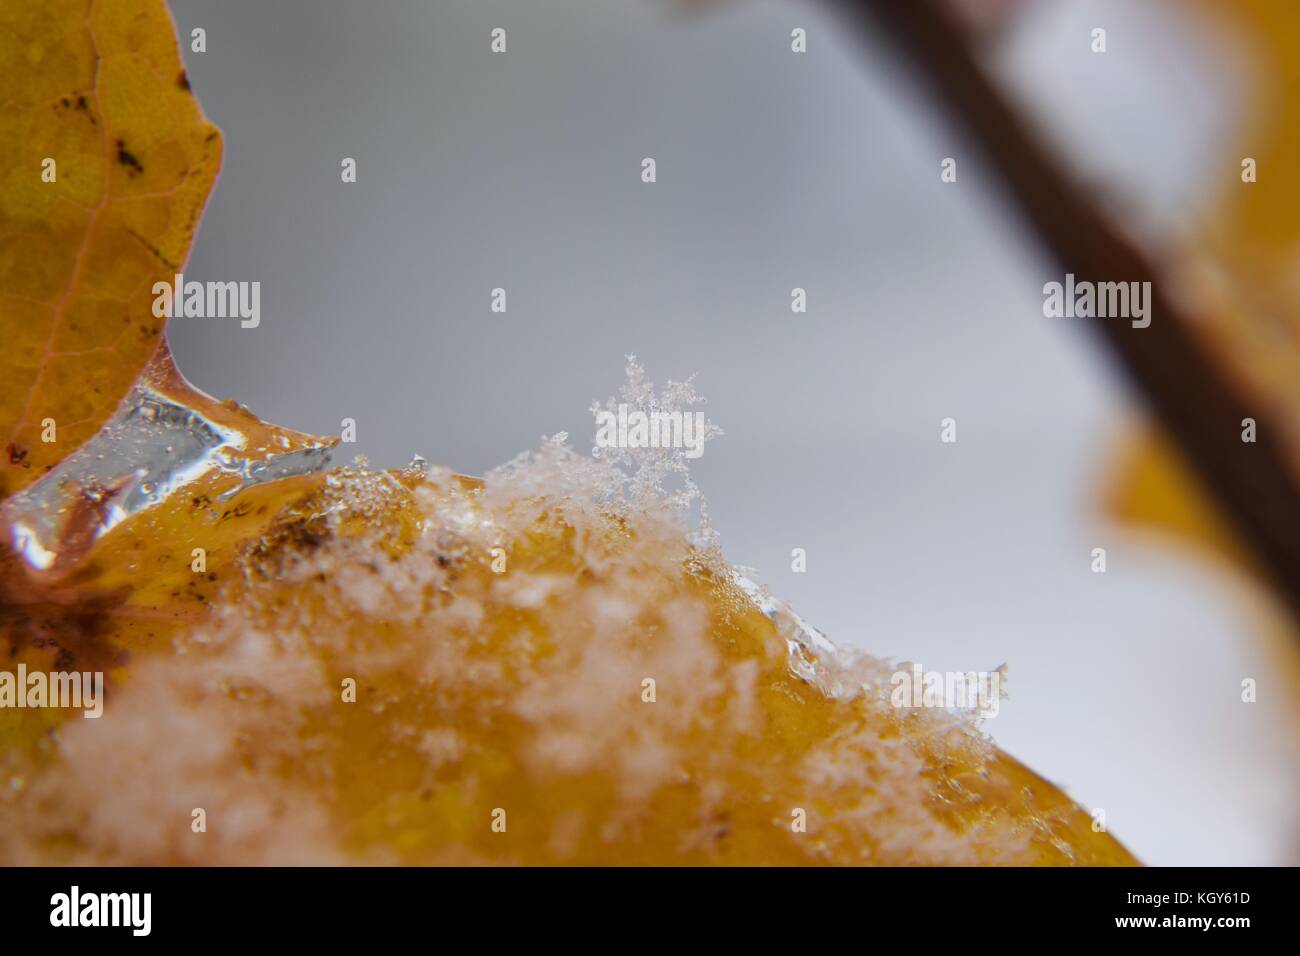 Close up de flocon de neige sur le bord de la feuille d'orange au cours de neige précoce Banque D'Images